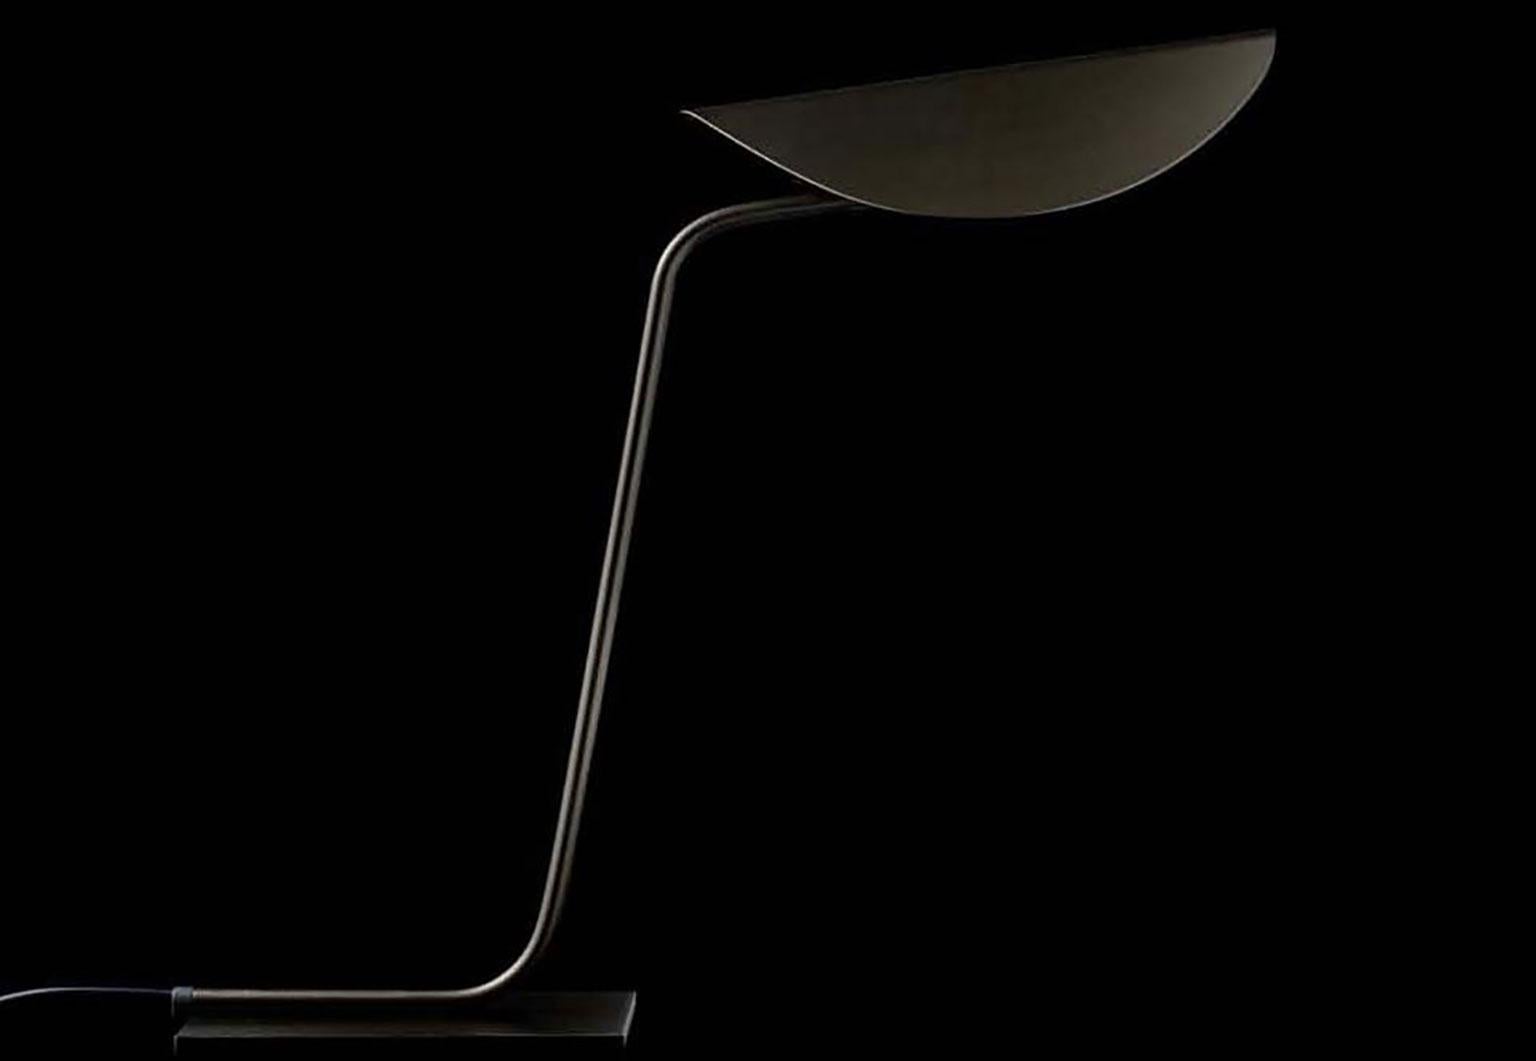 Lampe de table Plume en bronze anodisé conçue par Christophe Pillet pour Oluce. Ce travail du designer Christophe Pillet définit la clarté de l'apparence et la recherche de la simplicité. Faisant partie d'une famille, cette lampe est